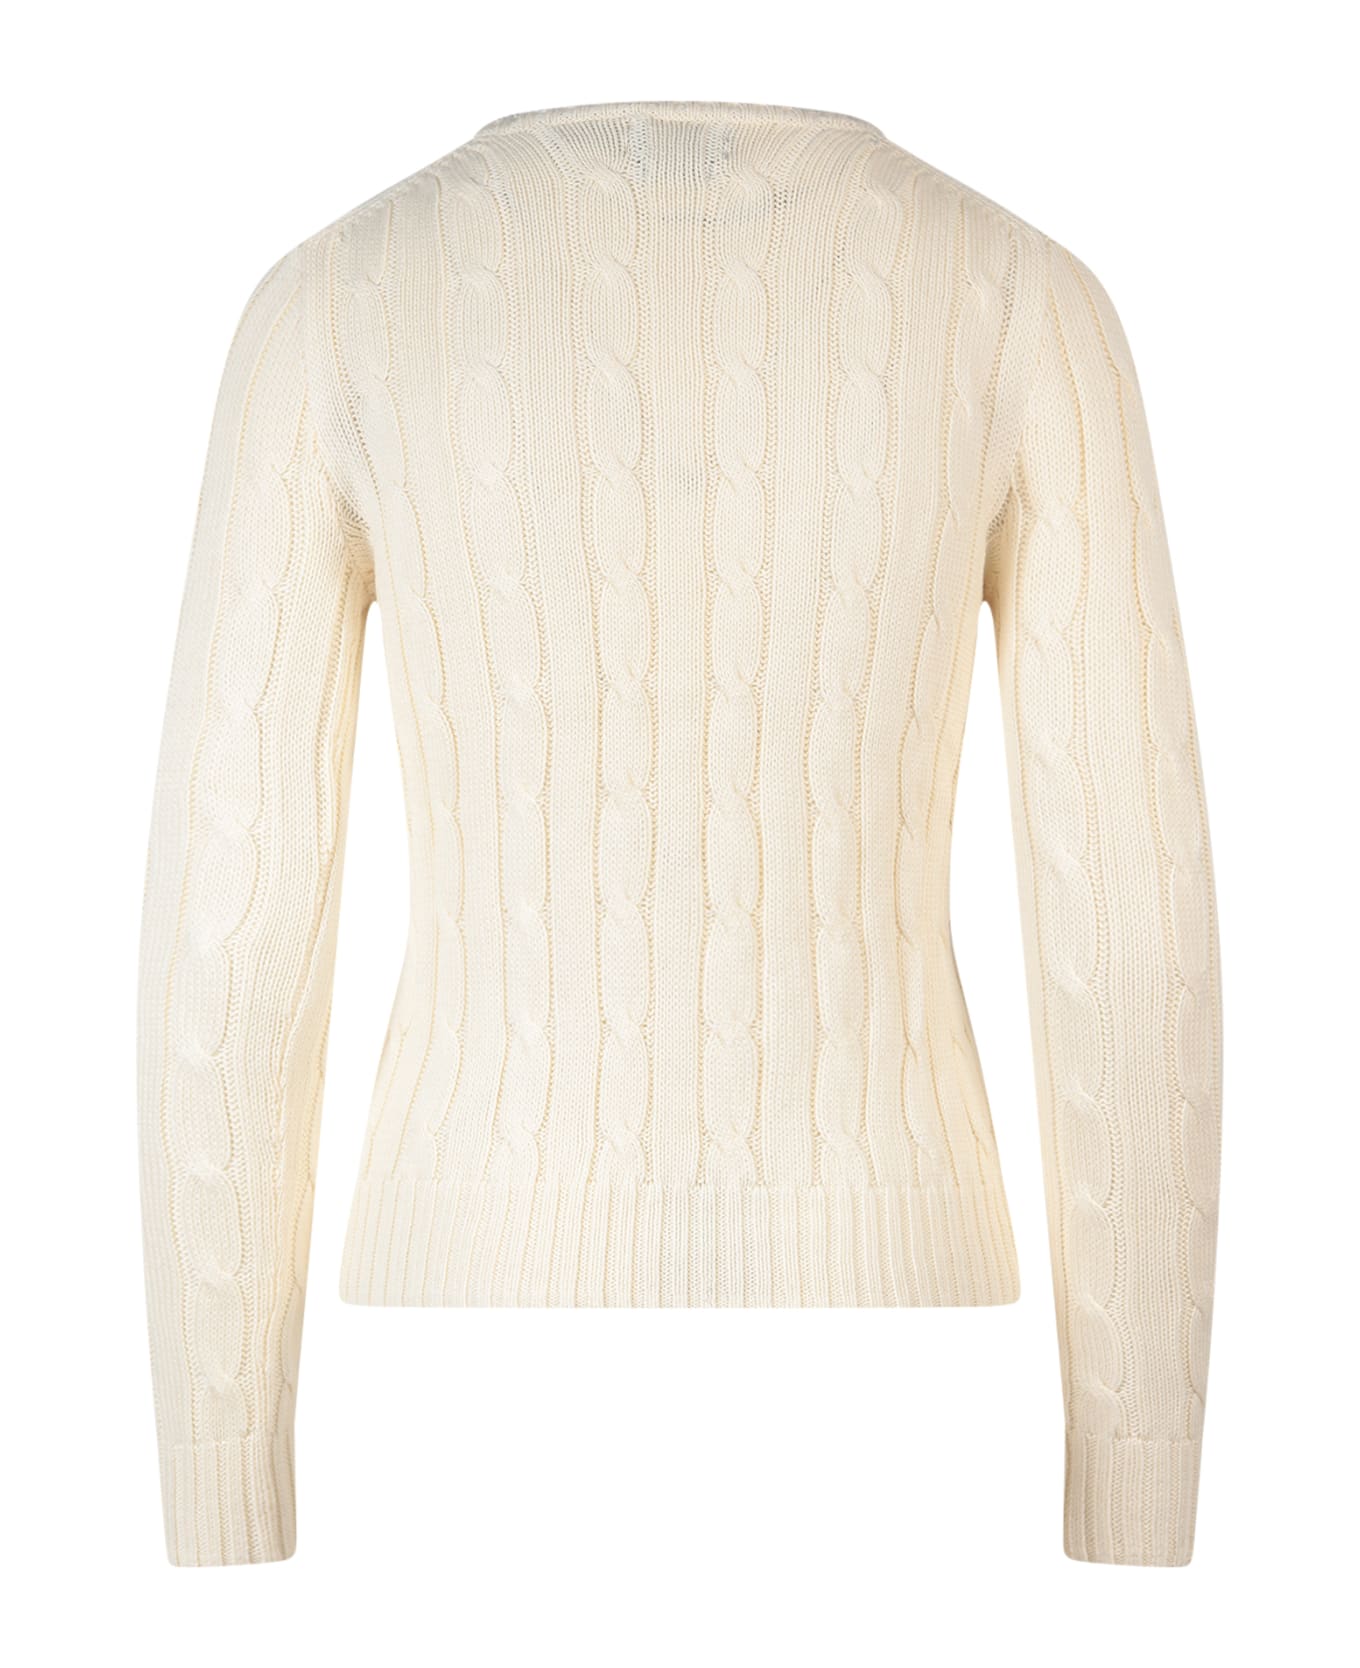 Ralph Lauren Sweater - Cream